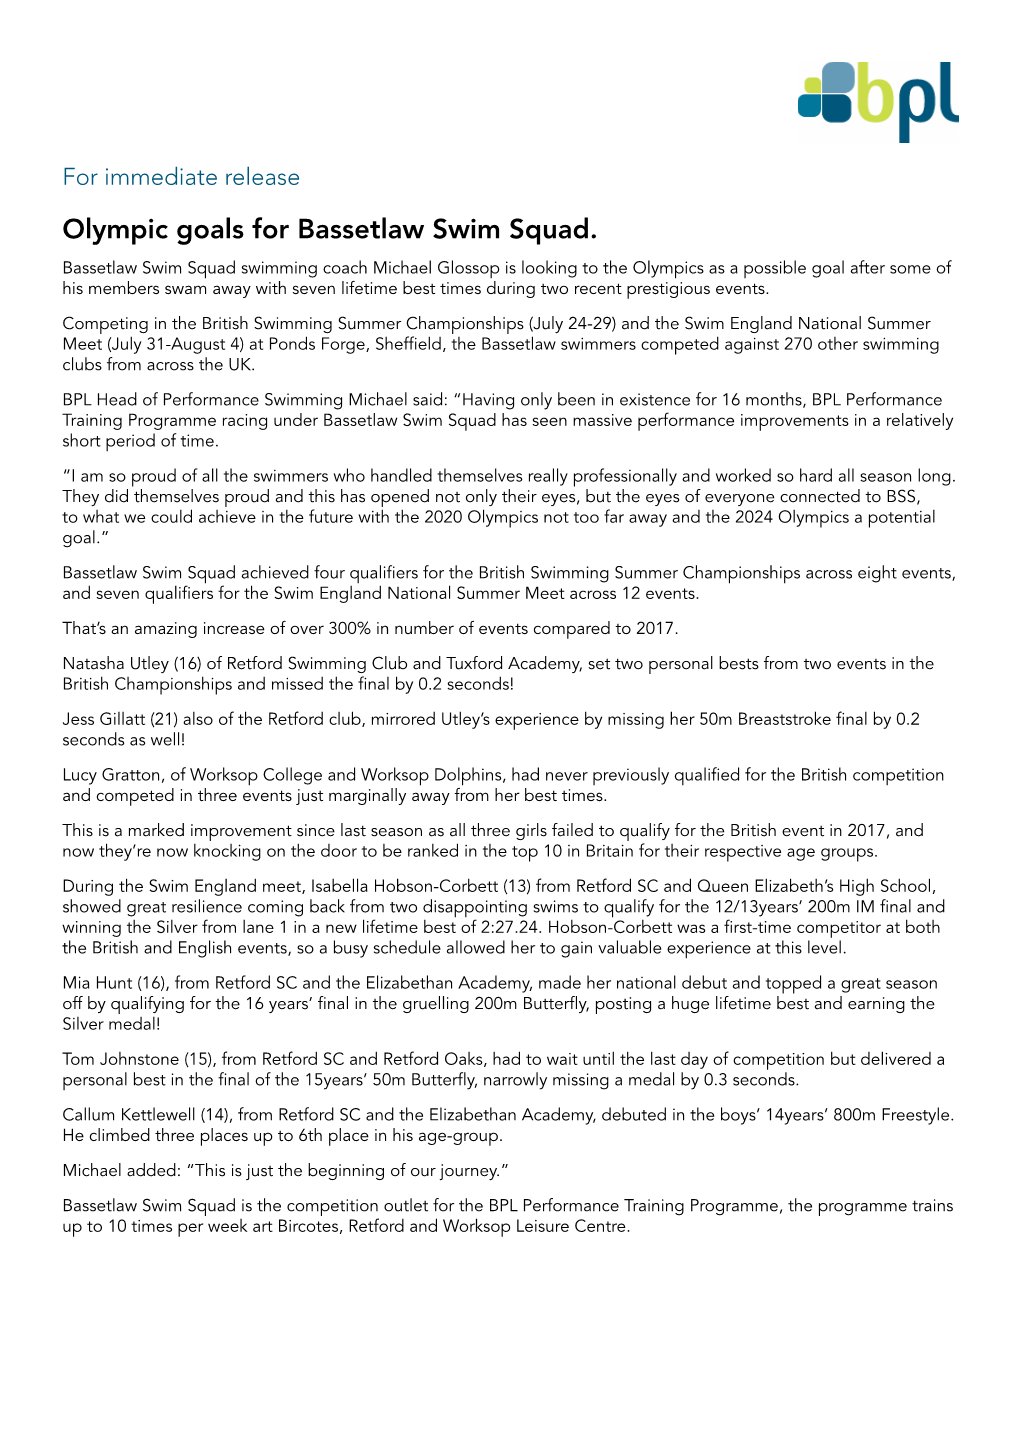 Olympic Goals for Bassetlaw Swim Squad